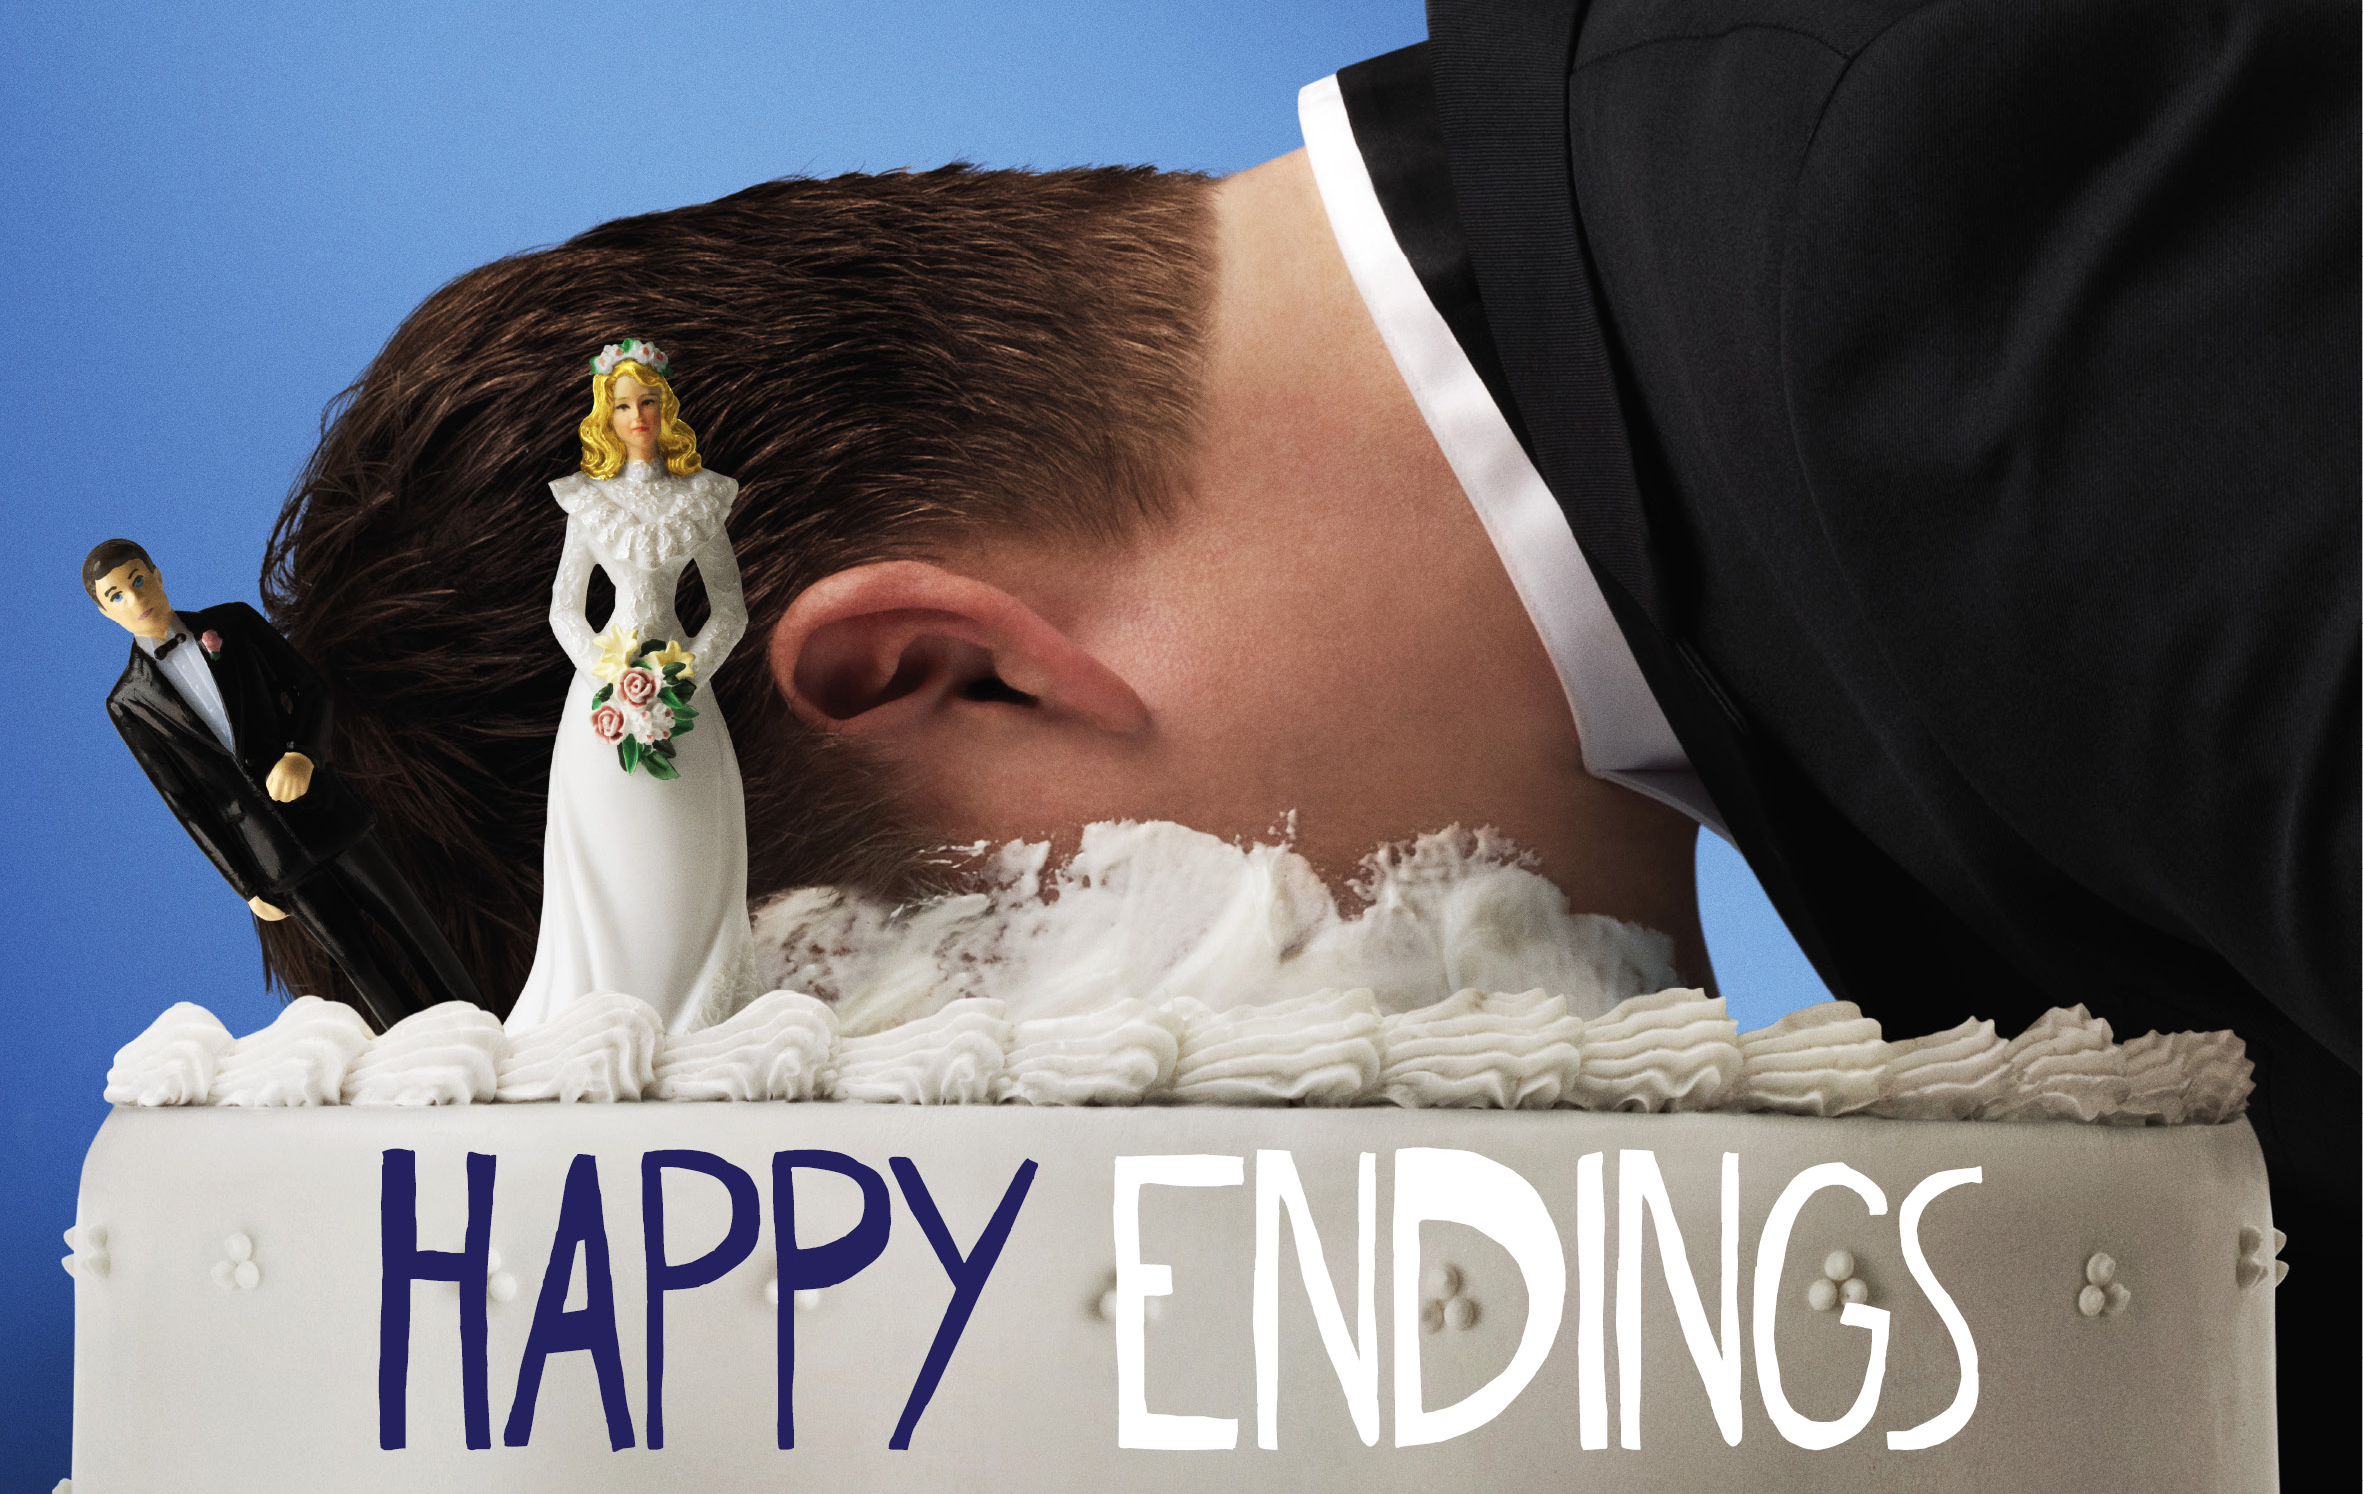 Happy ending 18. Happy Endings.